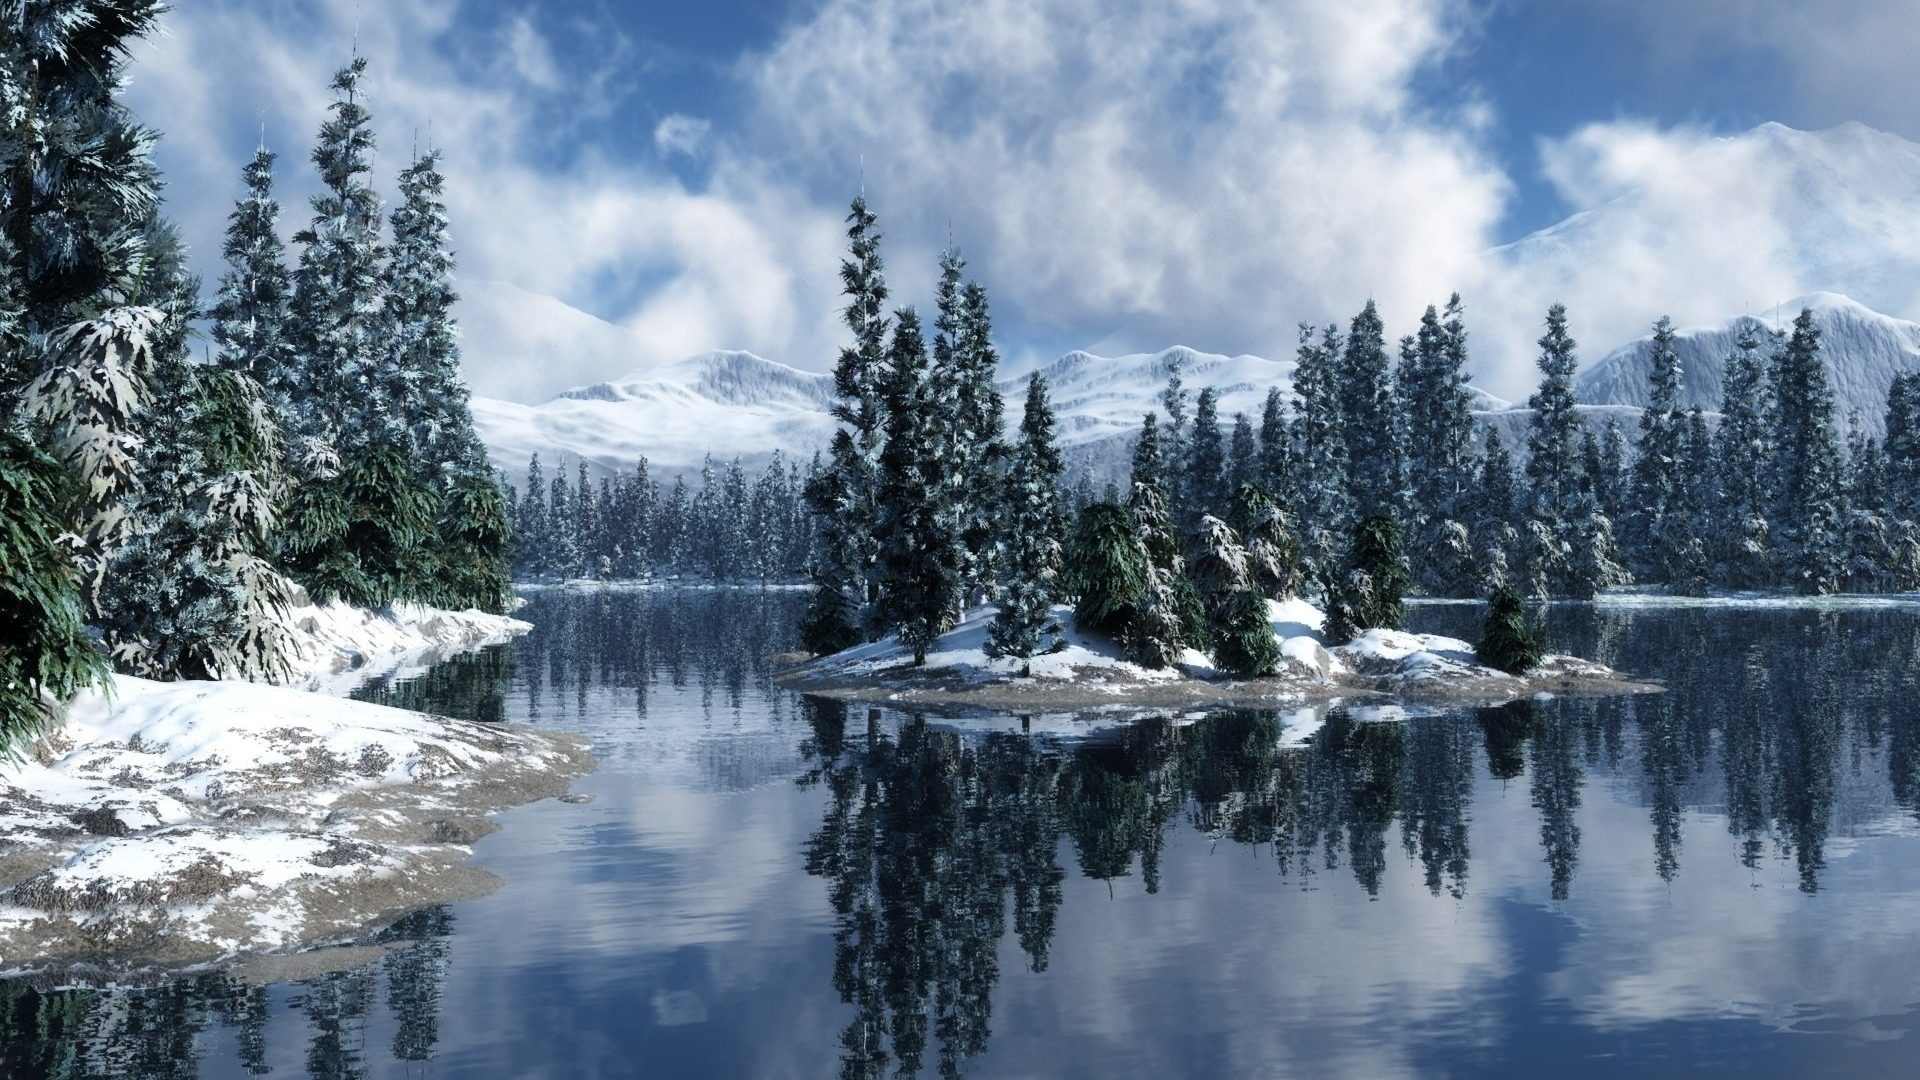 Winter Wonderland Backgrounds (41+ images)